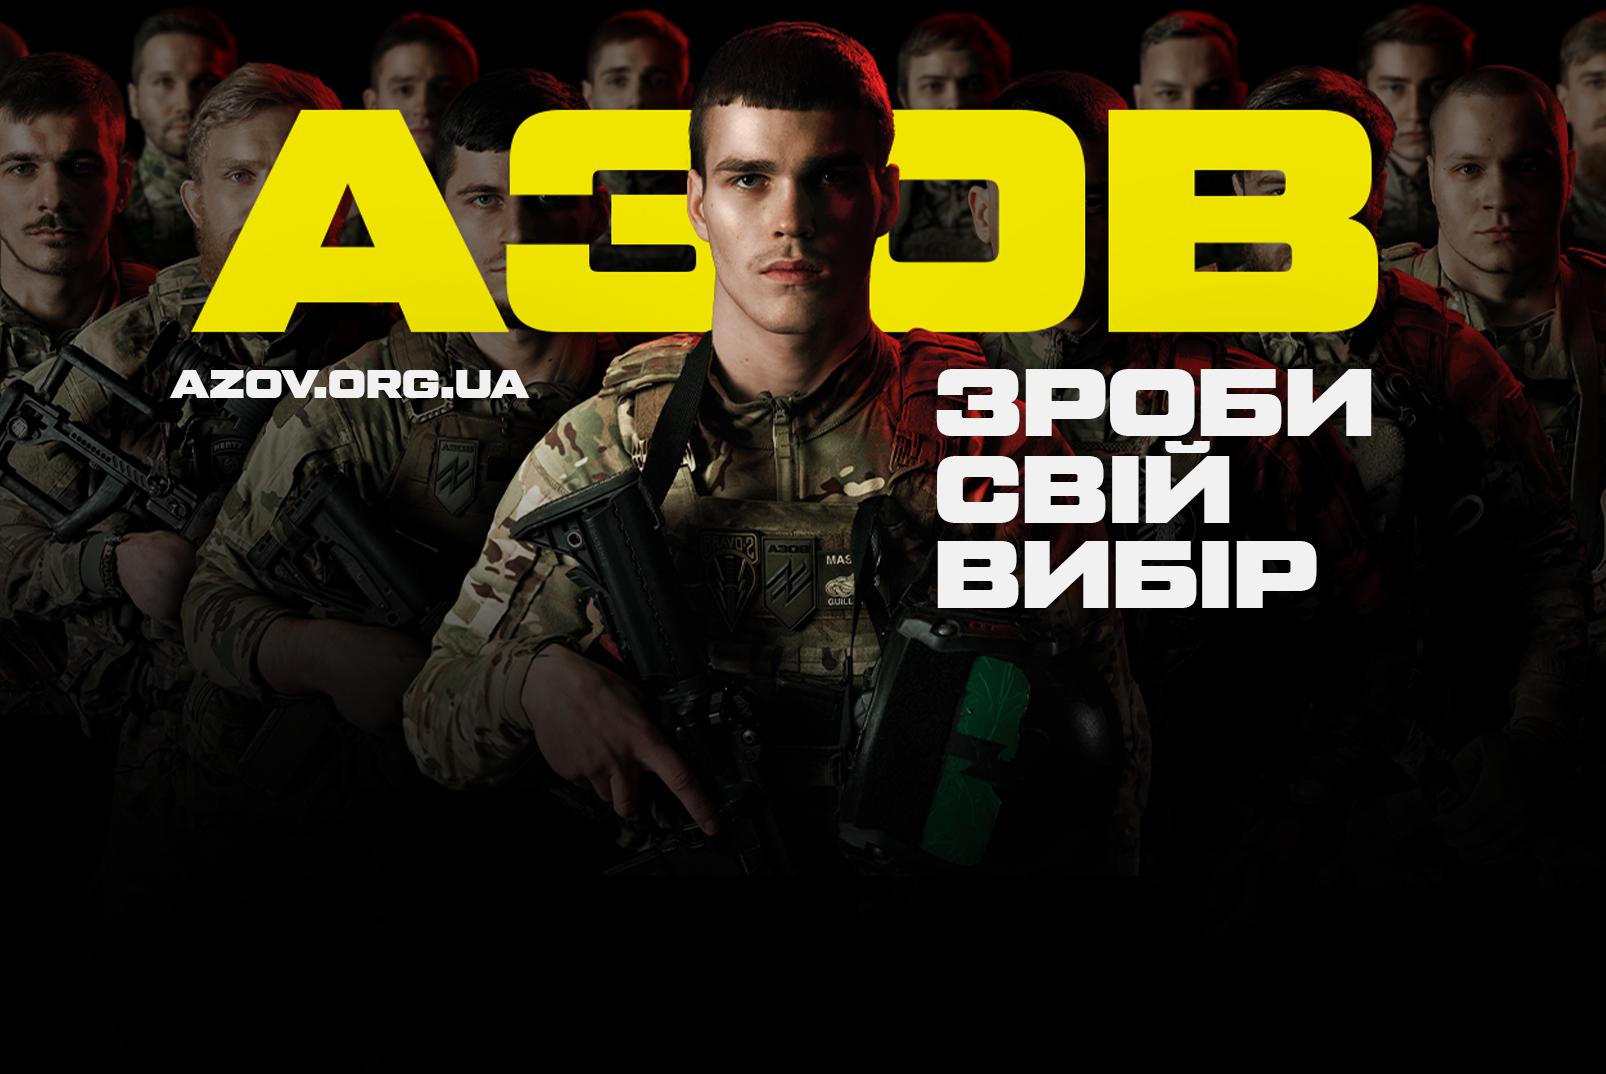 Адміністрація президента США Джо Байдена зняла заборону на постачання зброї 12-й бригаді спеціального призначення "Азов" Національної гвардії України